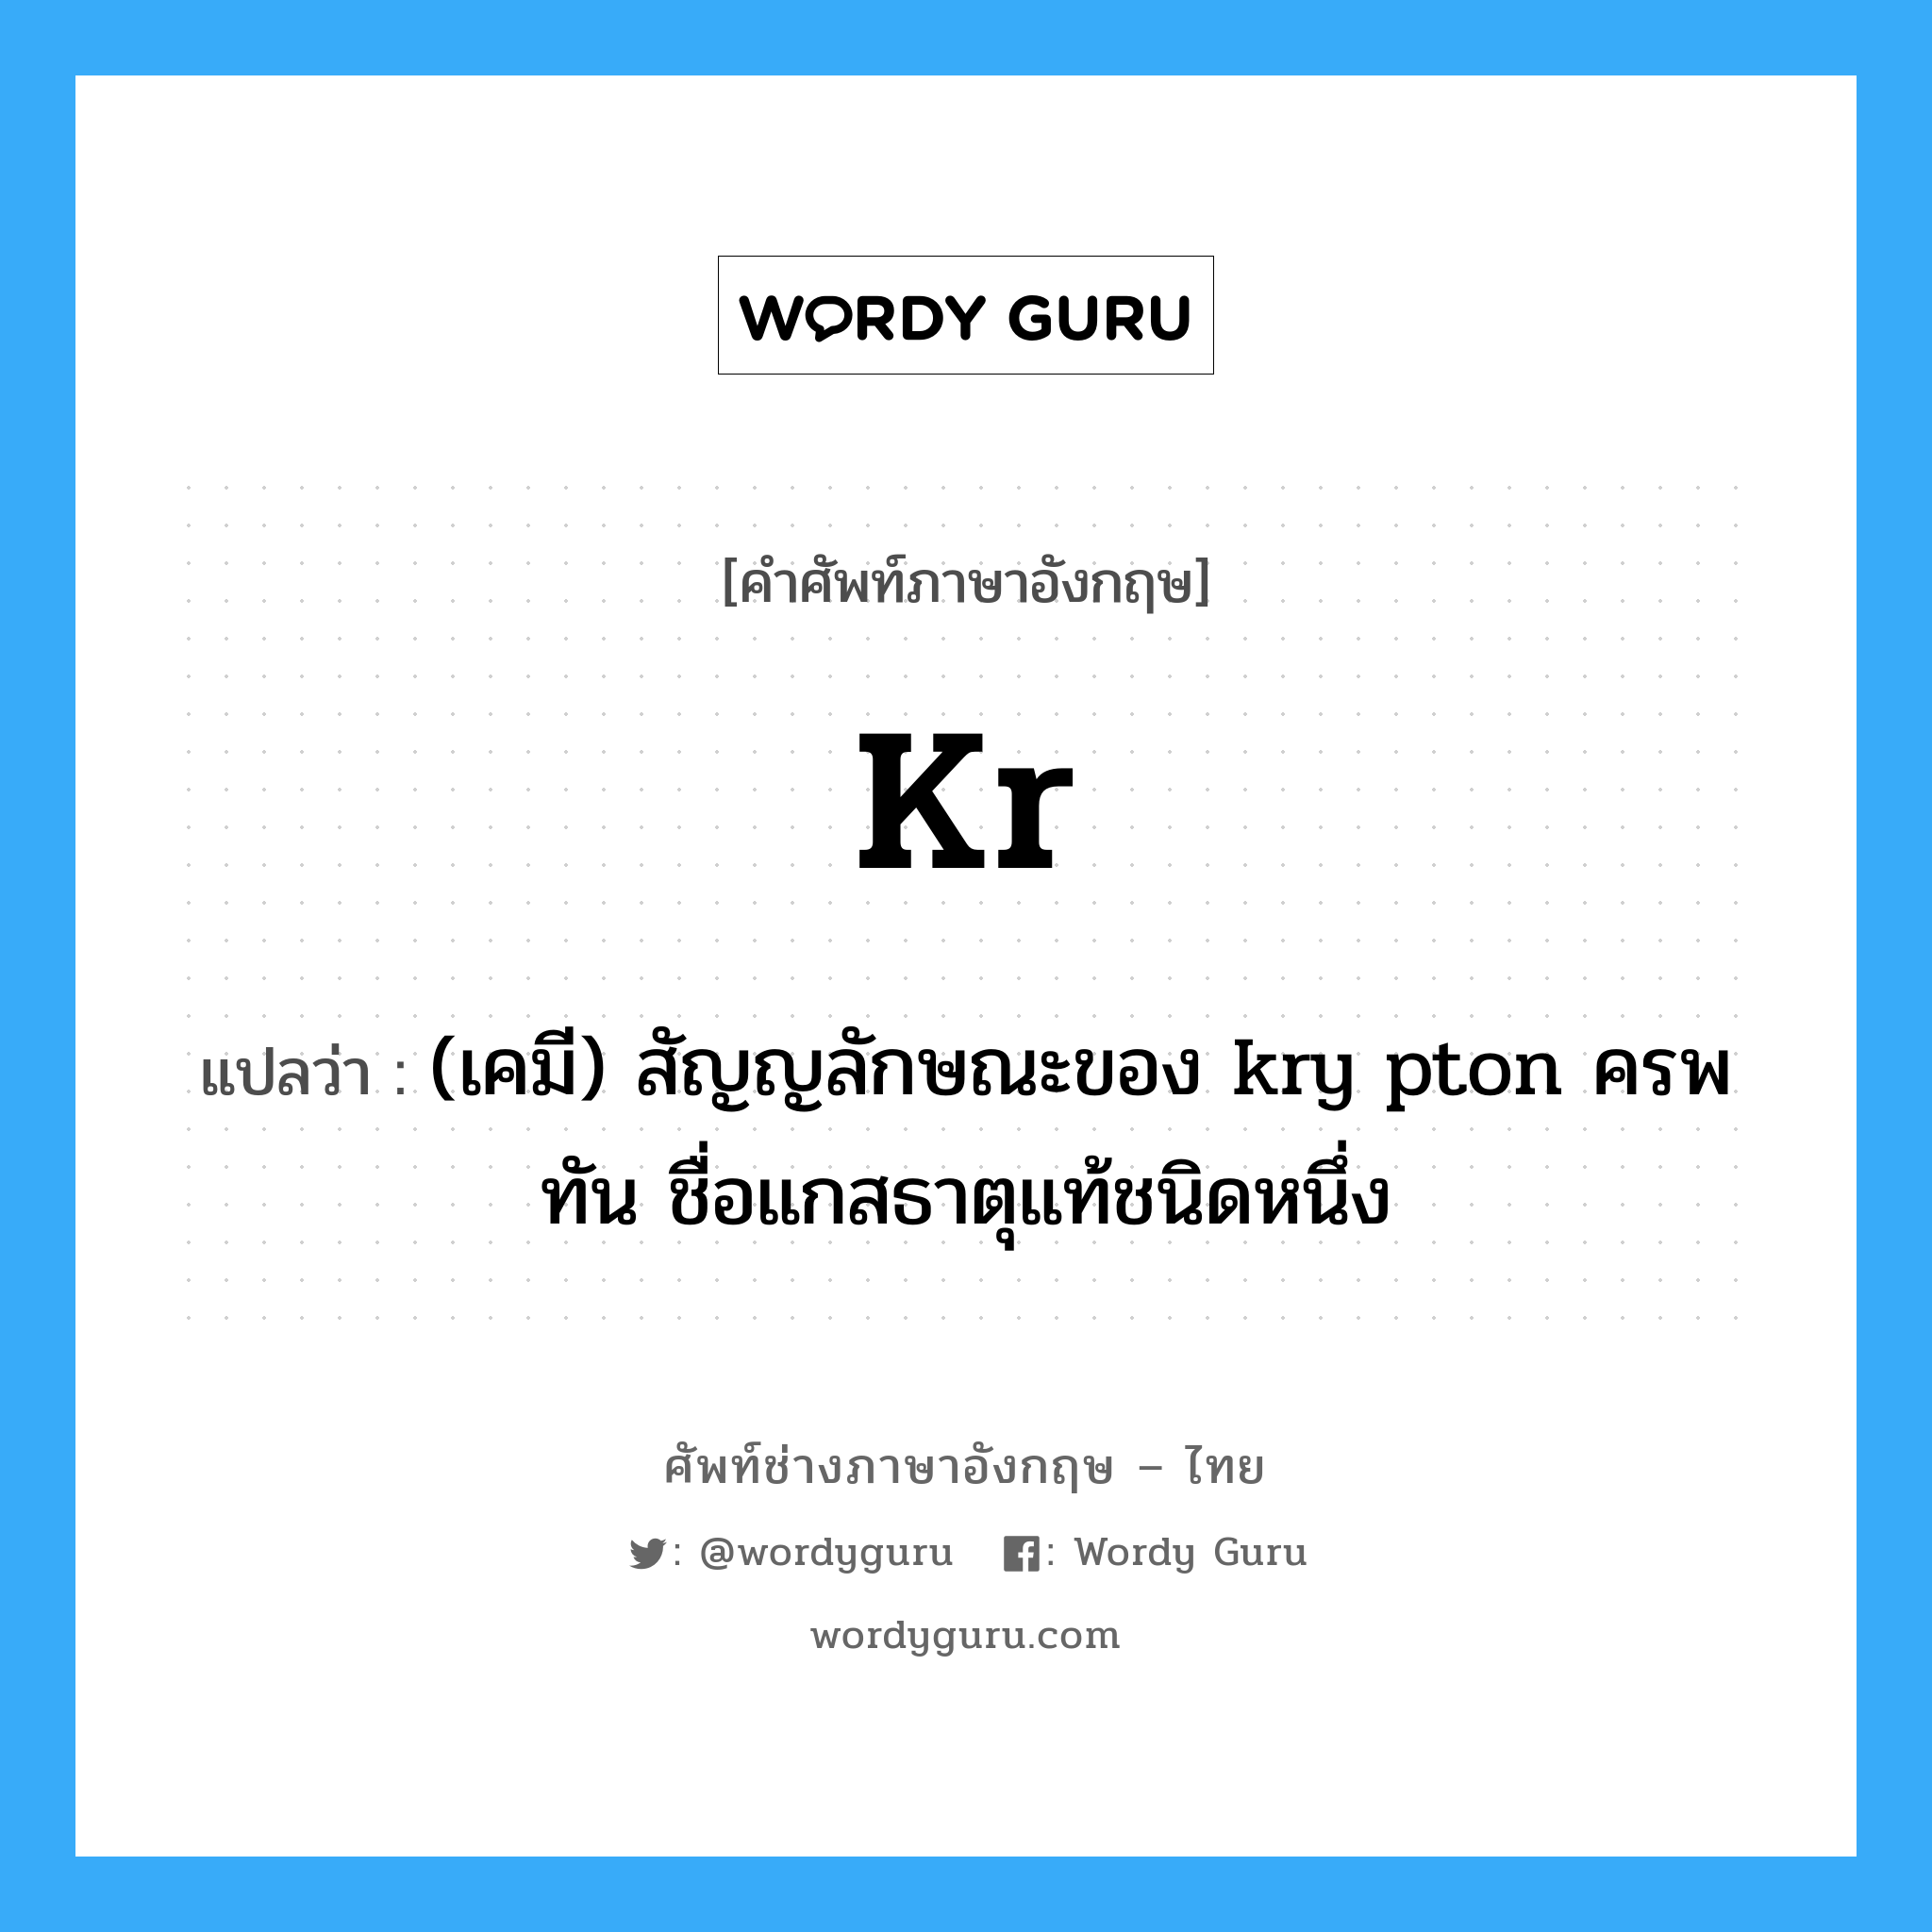 (เคมี) สัญญลักษณะของ kry pton ครพทัน ชื่อแกสธาตุแท้ชนิดหนึ่ง ภาษาอังกฤษ?, คำศัพท์ช่างภาษาอังกฤษ - ไทย (เคมี) สัญญลักษณะของ kry pton ครพทัน ชื่อแกสธาตุแท้ชนิดหนึ่ง คำศัพท์ภาษาอังกฤษ (เคมี) สัญญลักษณะของ kry pton ครพทัน ชื่อแกสธาตุแท้ชนิดหนึ่ง แปลว่า Kr